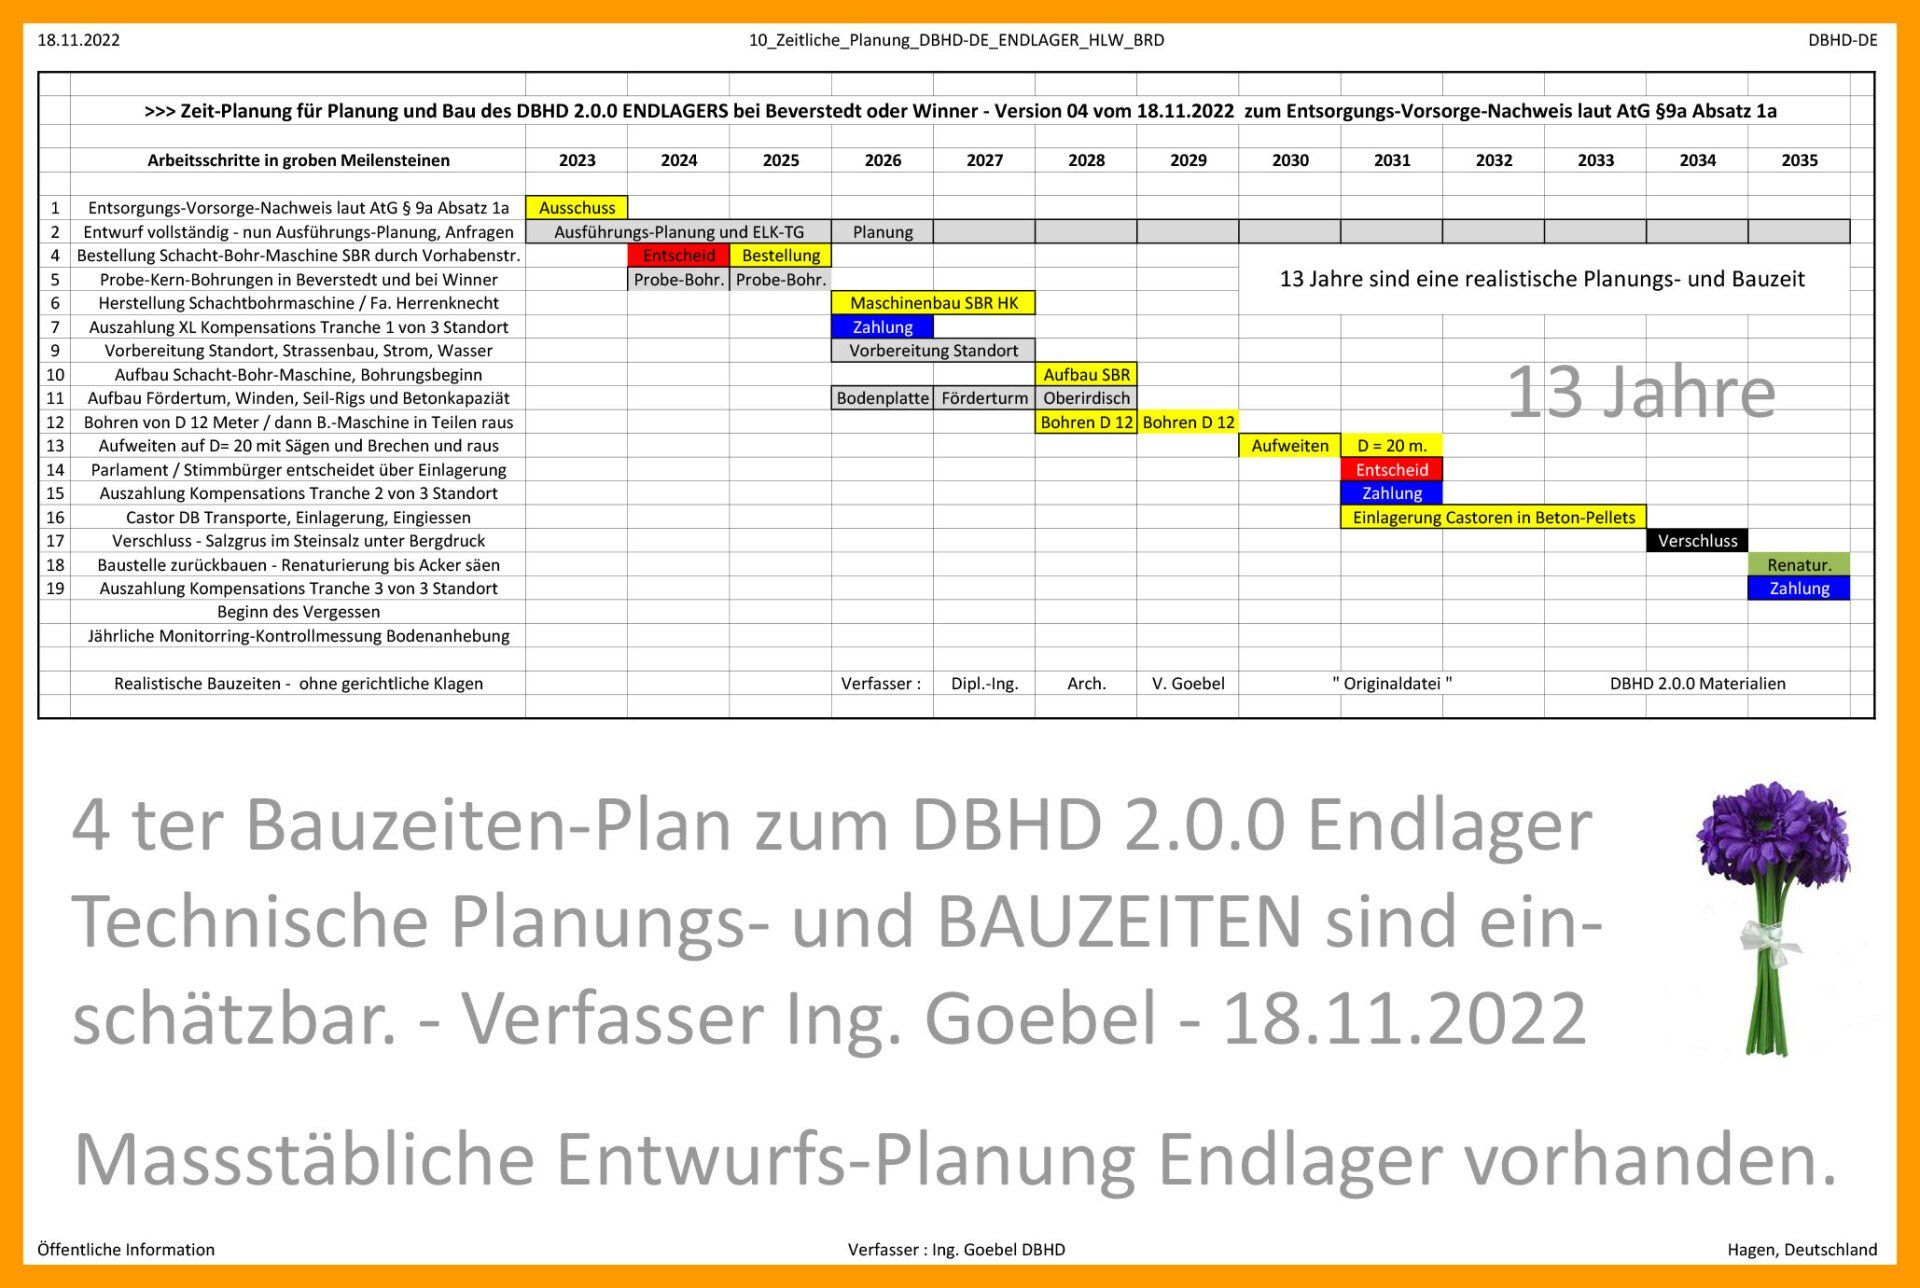 Planungs-und Bauzeit DBHD 2.0.0 Endlager bei Beverstedt - Entsorgungs-Vorsorge-Nachweis